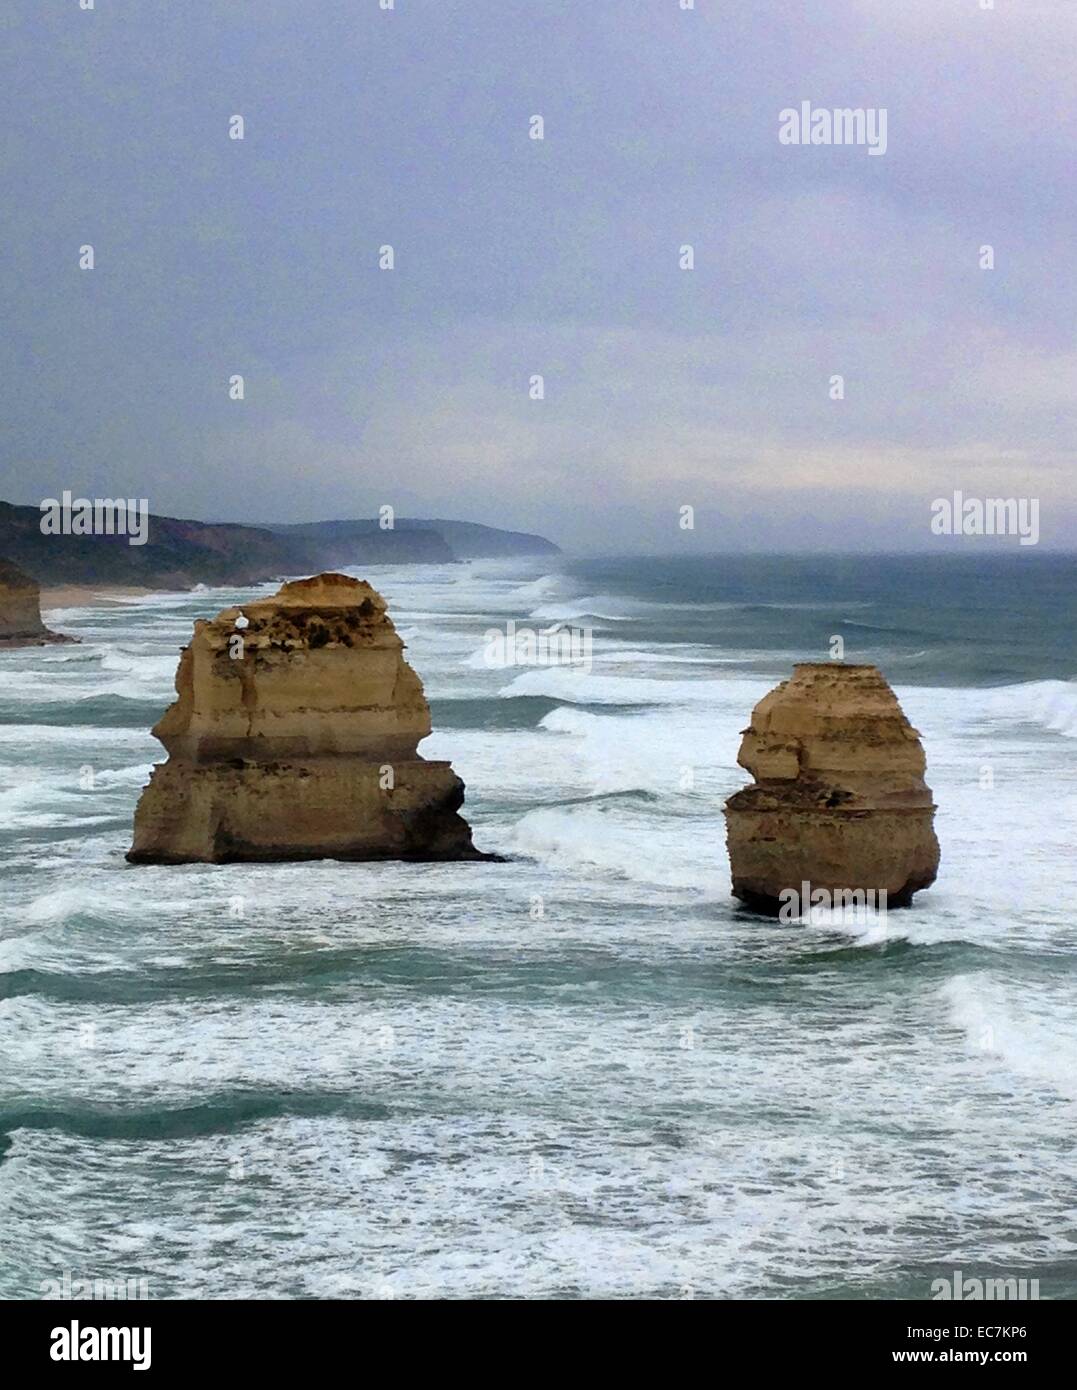 Les douze apôtres est une collection de cheminées de calcaire de la rive du Port Campbell National Park, par la Great Ocean Road, à Victoria, en Australie. La proximité de l'un à l'autre a fait le site une attraction touristique populaire. Banque D'Images